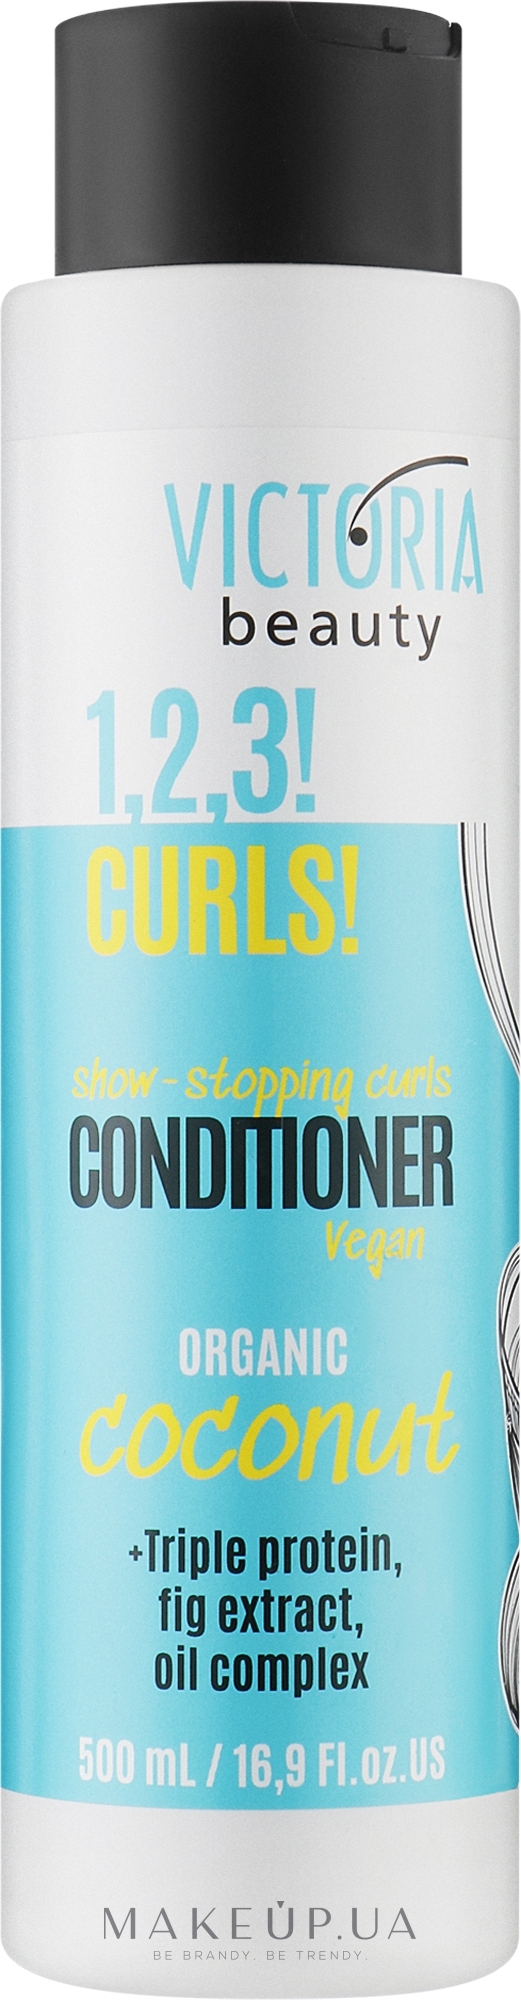 Кондиціонер для кучерявого волосся - Victoria Beauty 1,2,3! Curls! Conditioner — фото 500ml